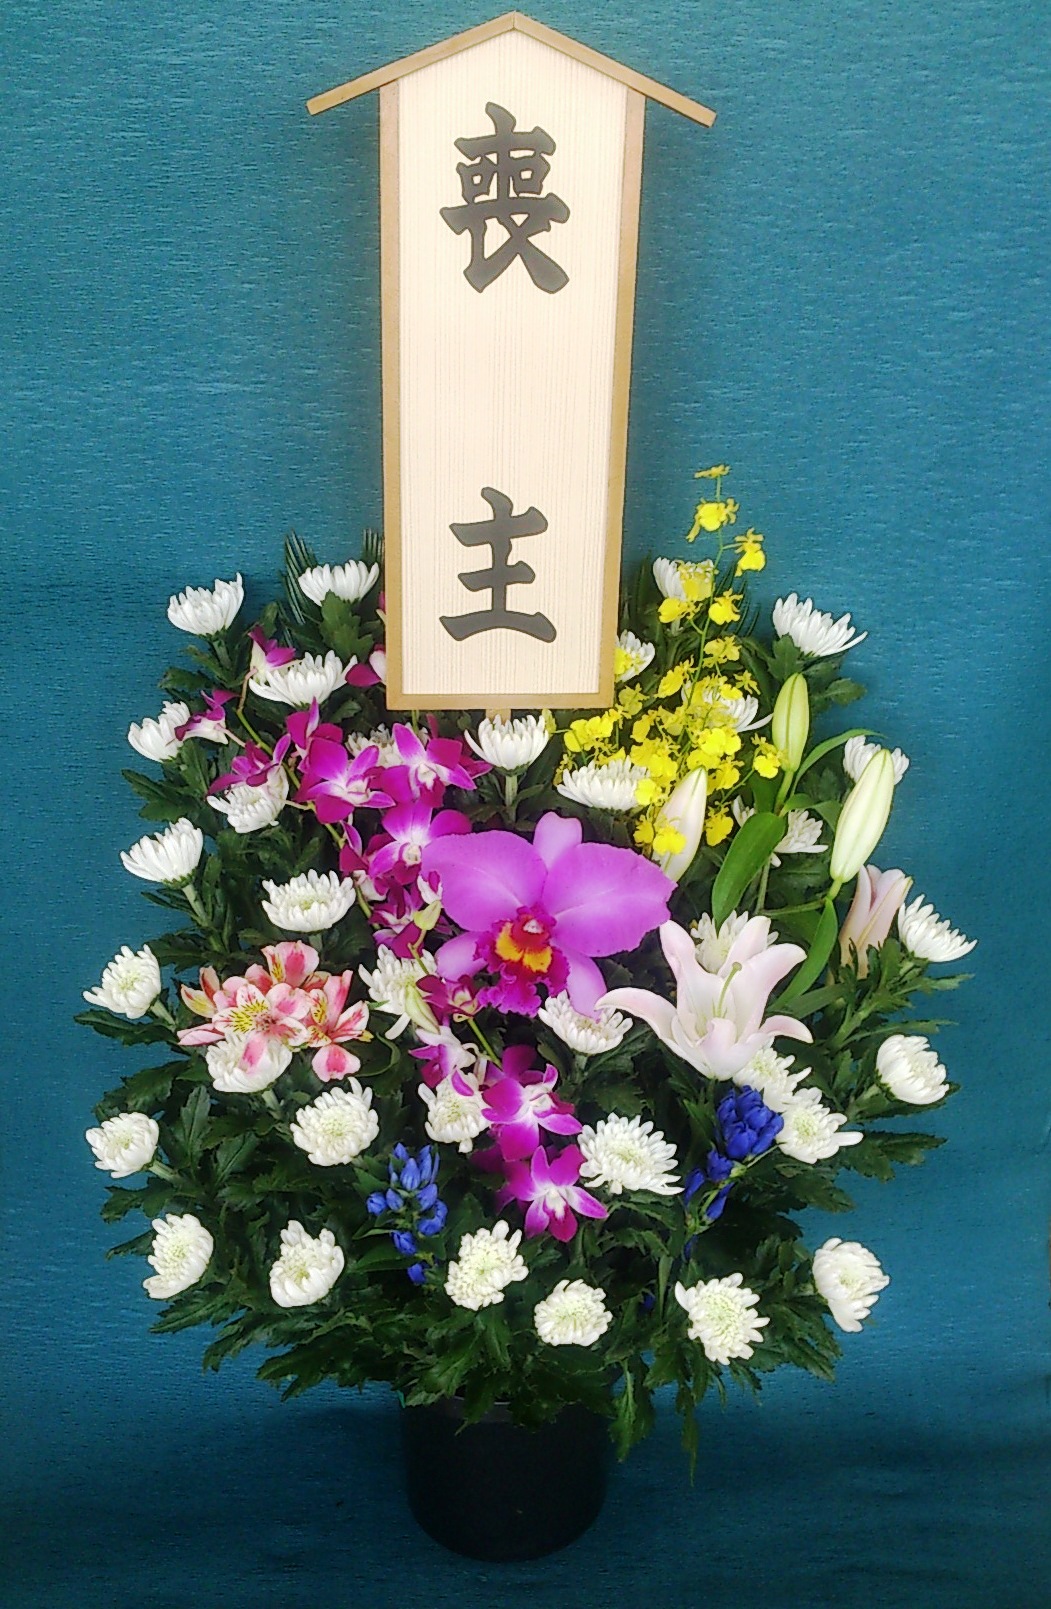 愛川聖苑に葬儀用の生花をお届けいたします。当日のお届けも可能ですのでお電話ください。